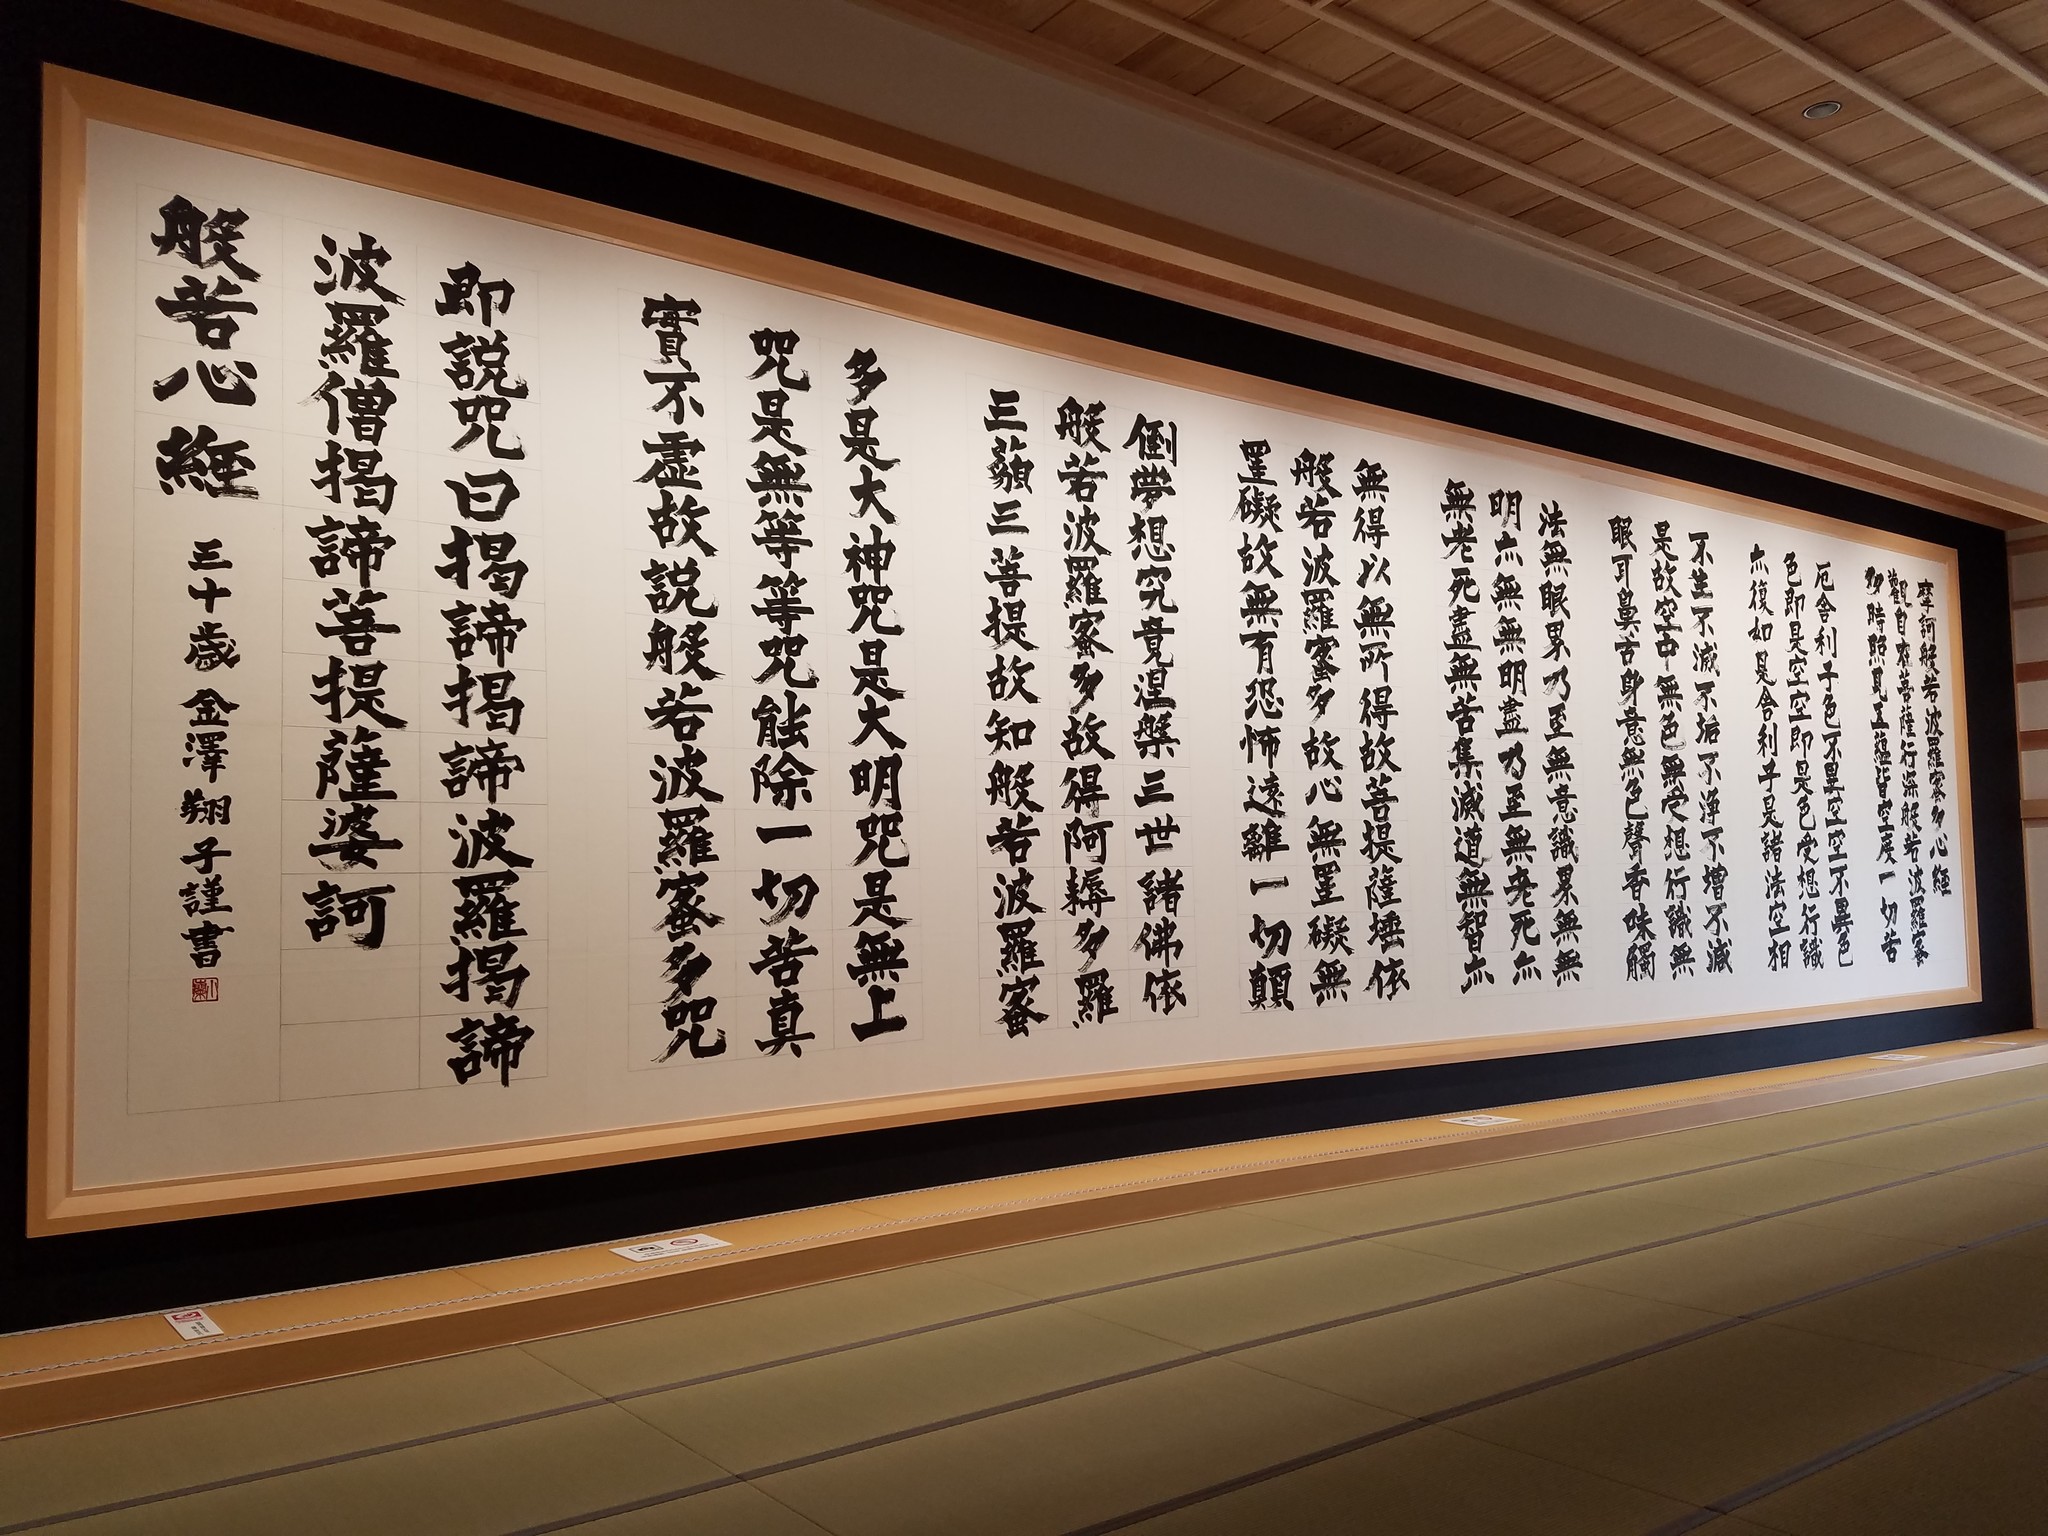 ダウン症の天才書家 金澤翔子 世界一大きい般若心経 を奉納 龍雲寺のプレスリリース